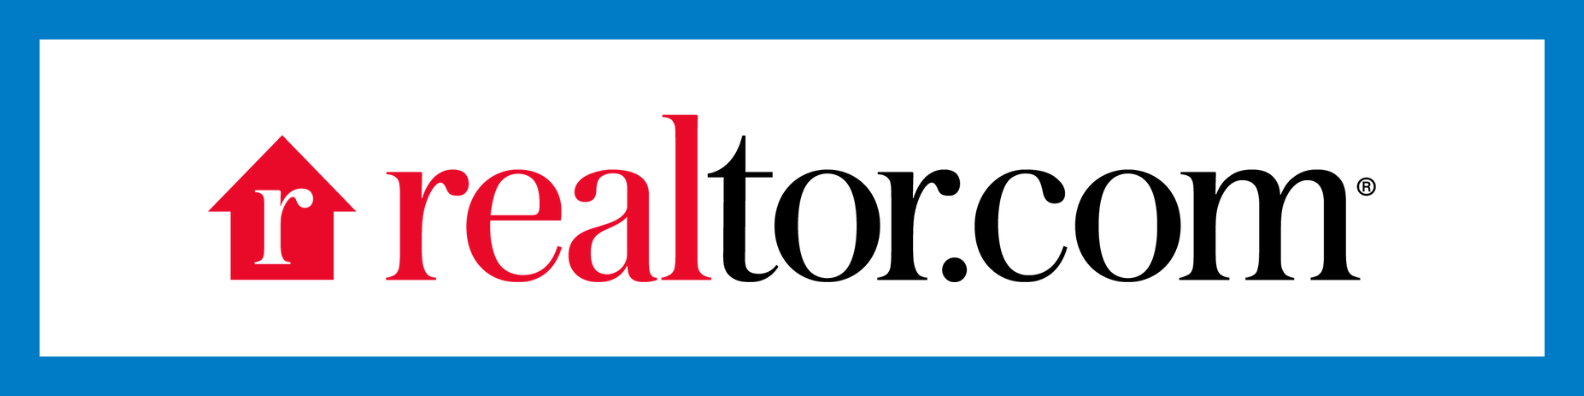 new realtor.com logo